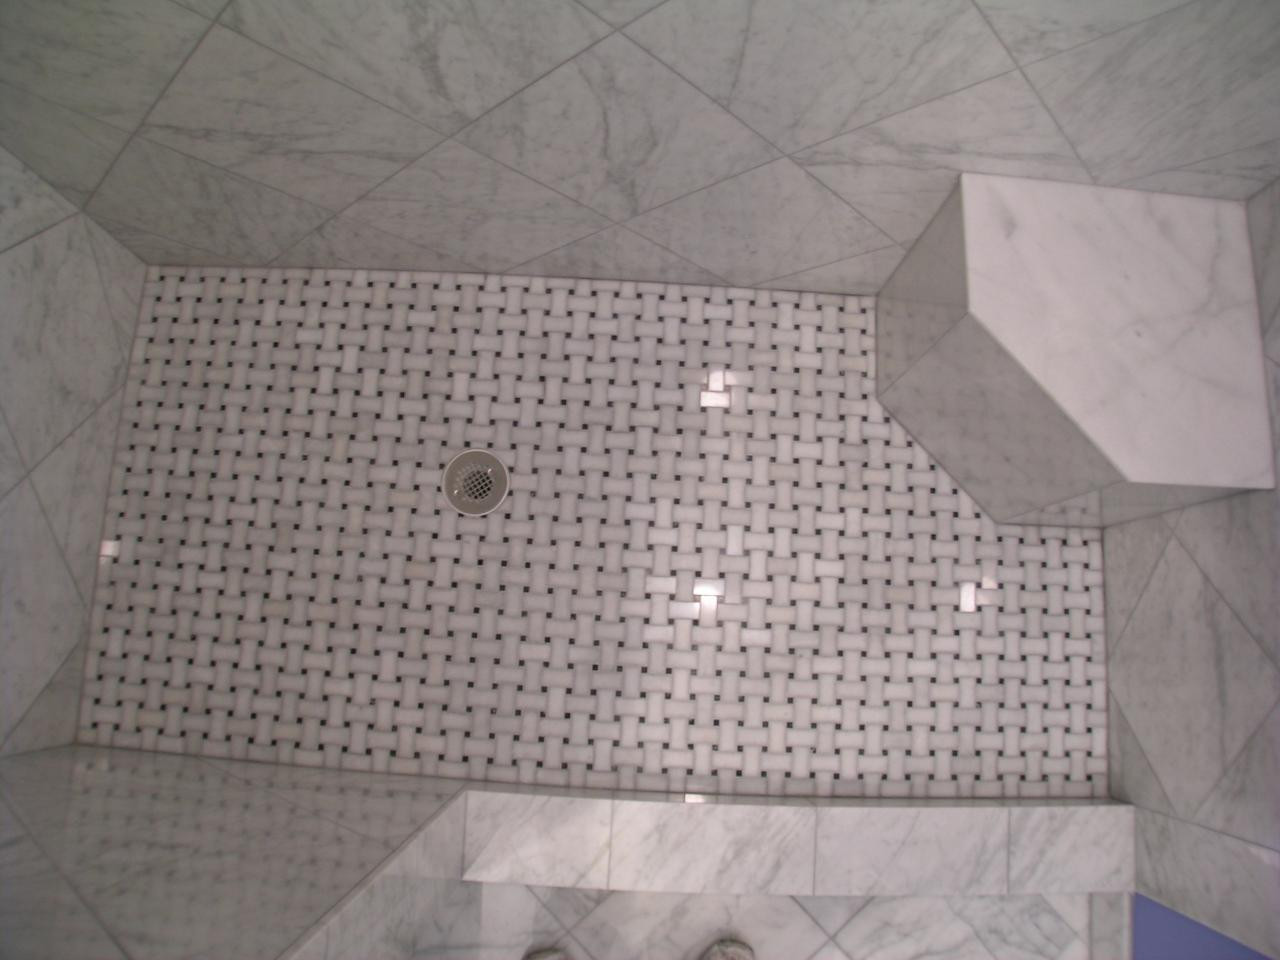 Basket Weave Bathroom Floor Tile
 30 nice ideas and pictures of basketweave bathroom tile 2020